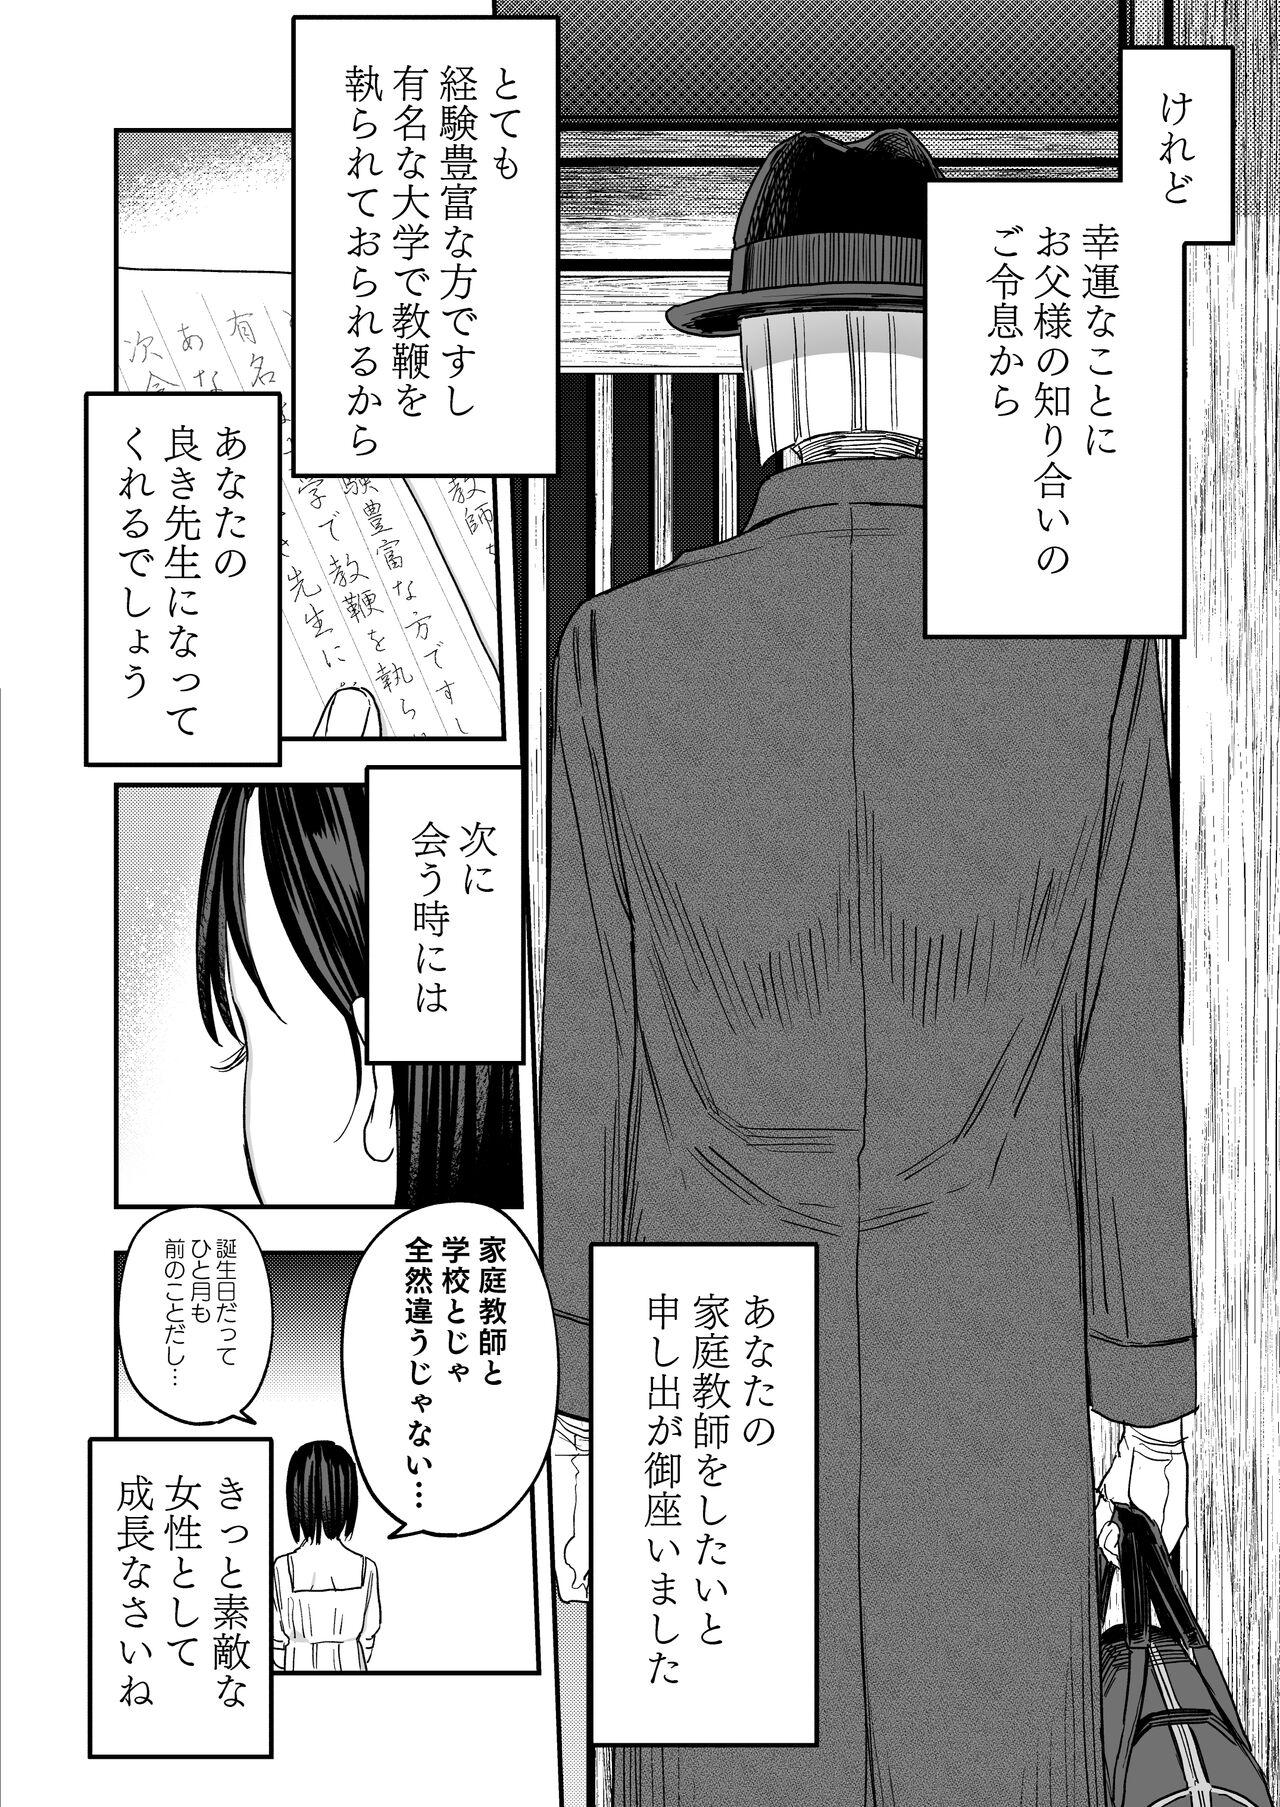 Home Hachiroku Sou - Ieori to Hana Katajikena no Yome - Original Sis - Page 3